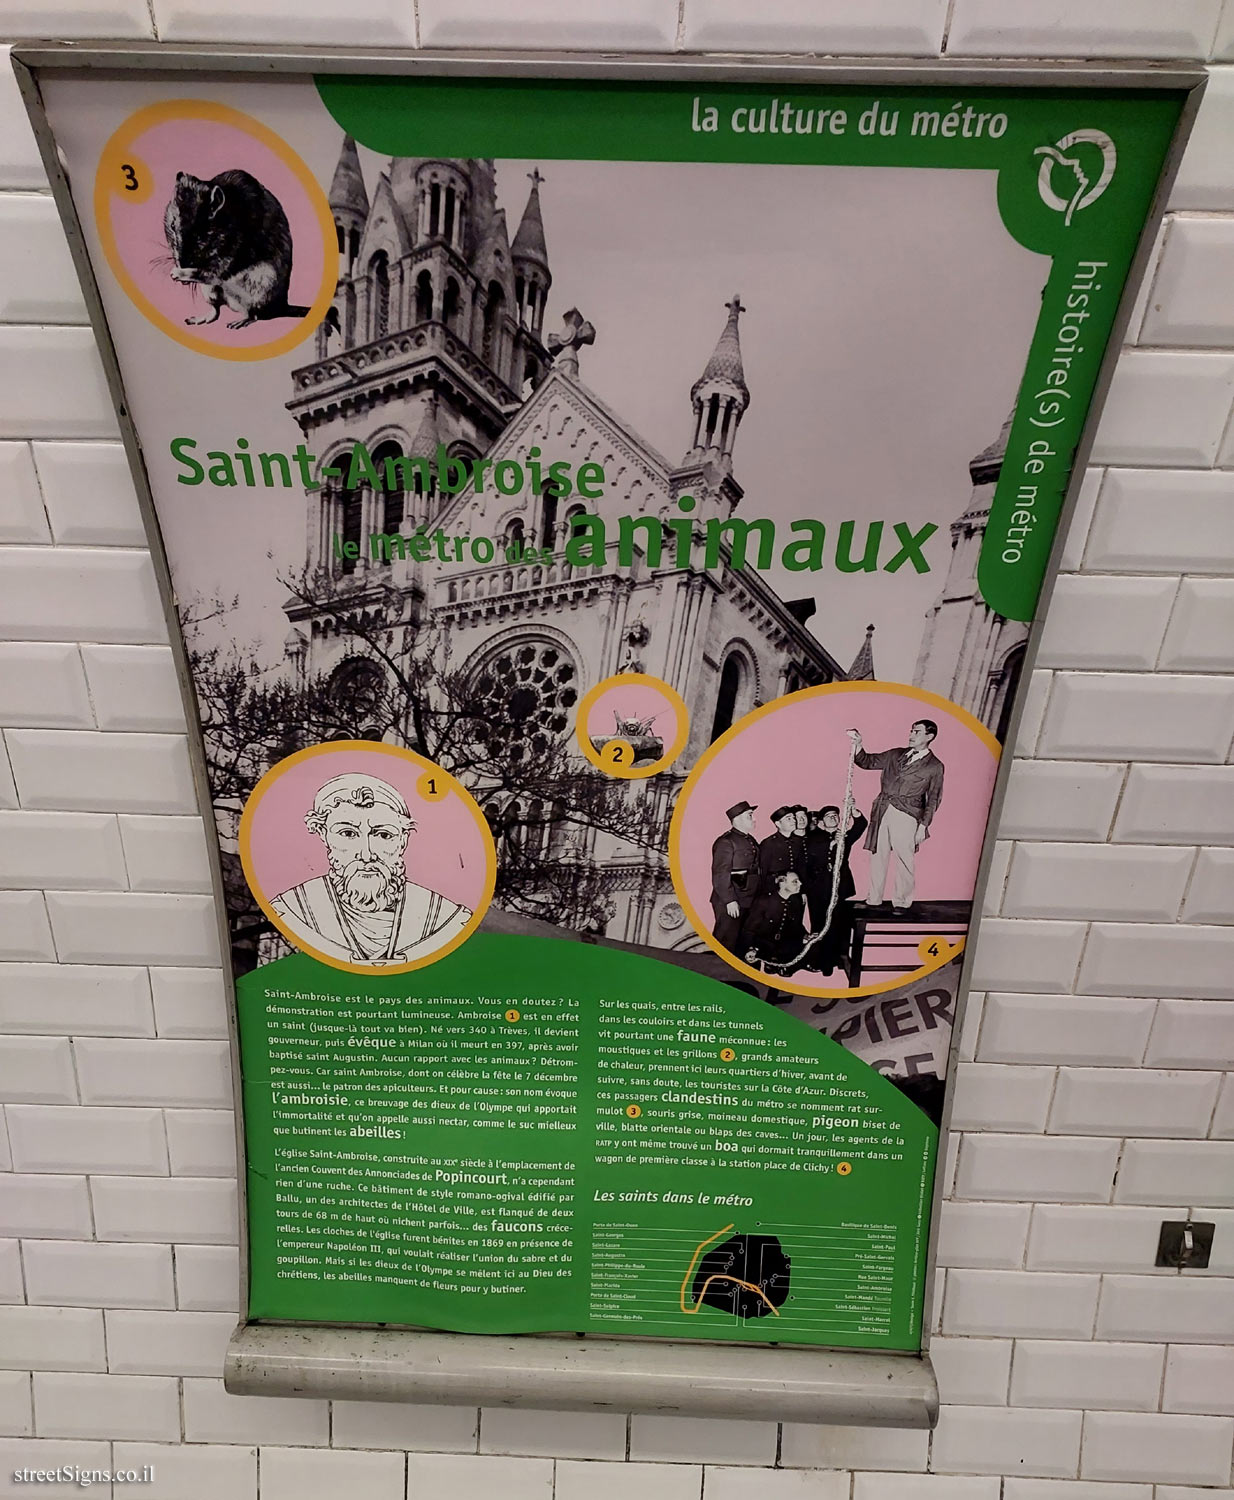 Paris - The Art of the Metro - Saint-Ambroise the animal metro